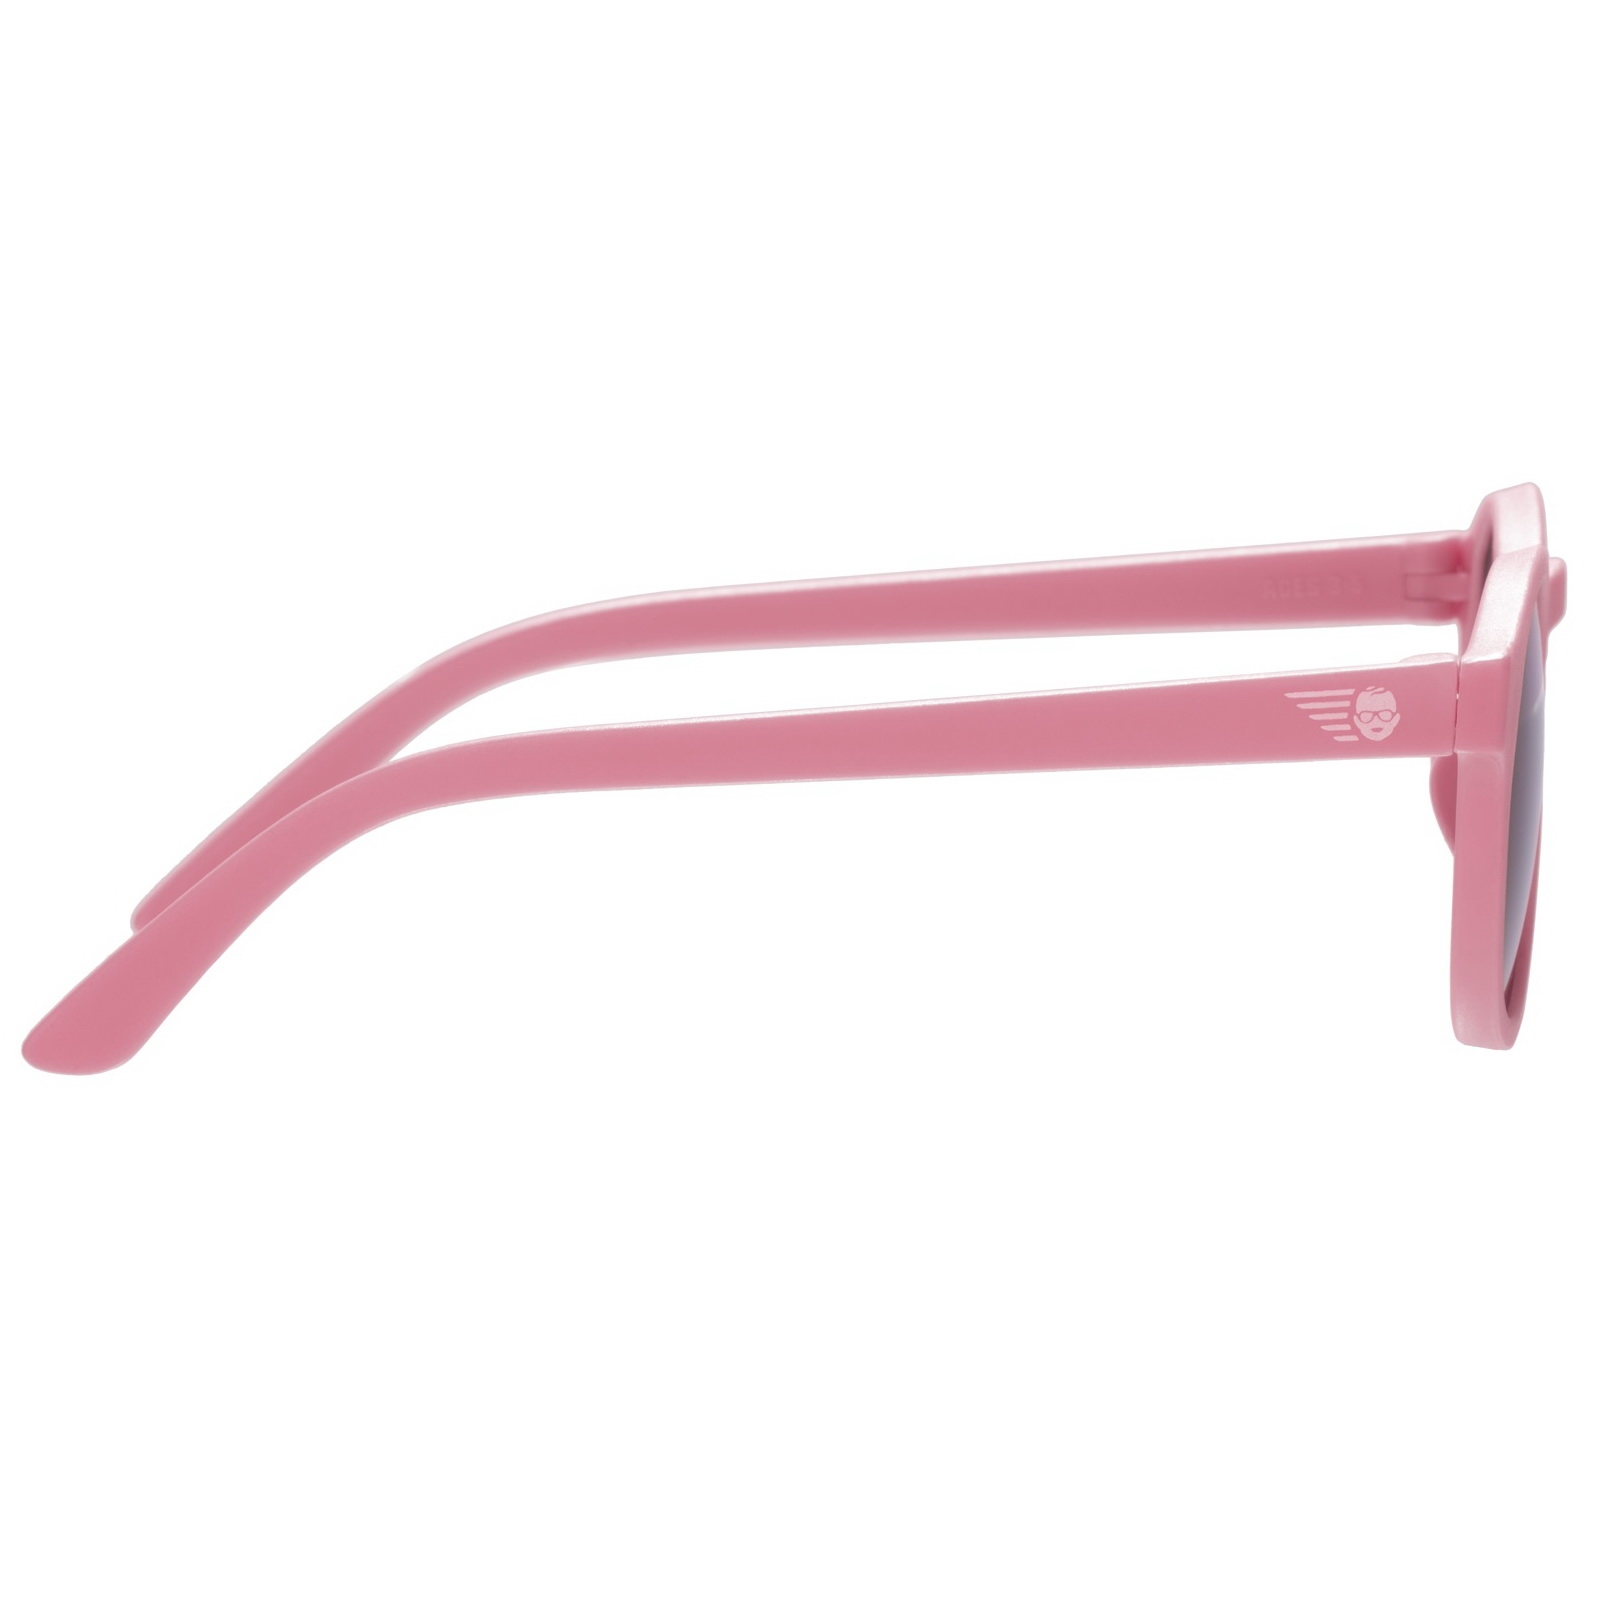 Солнцезащитные очки - Babiators Original Keyhole. Чудесненький арбуз/Wonderfully Watermelon, дымчатые, Classic  